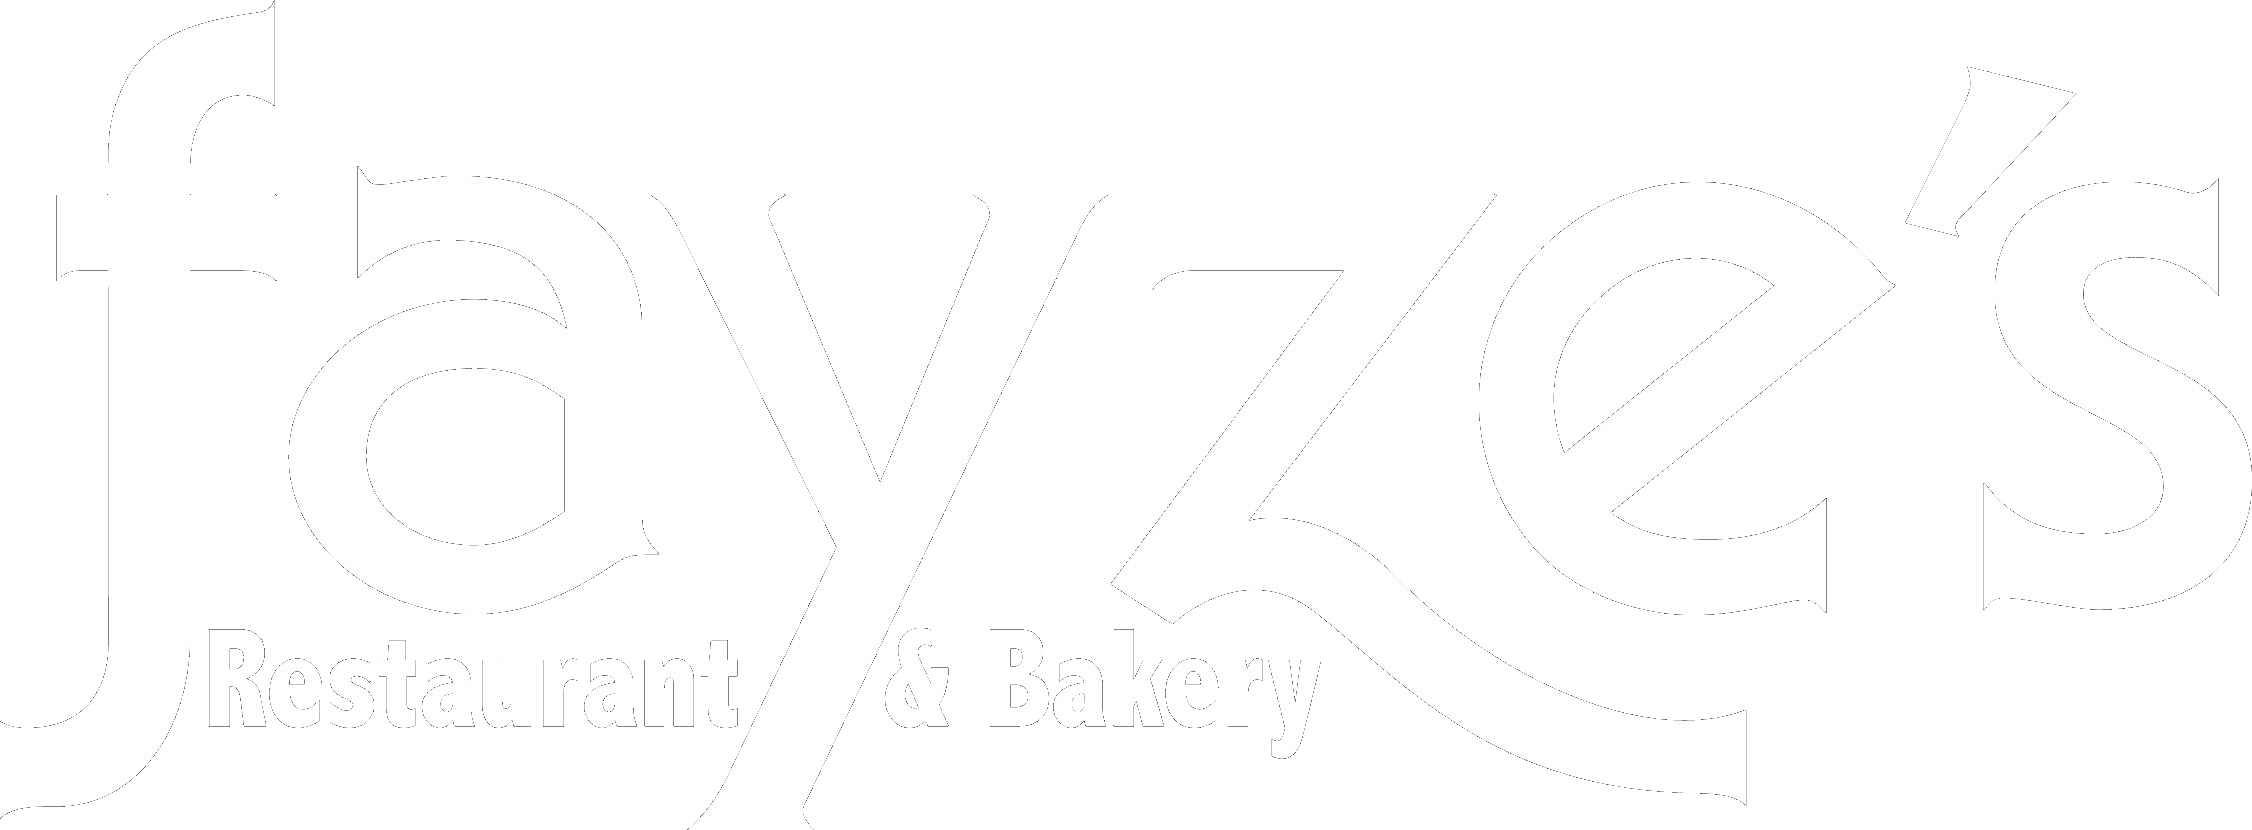 Fayze's